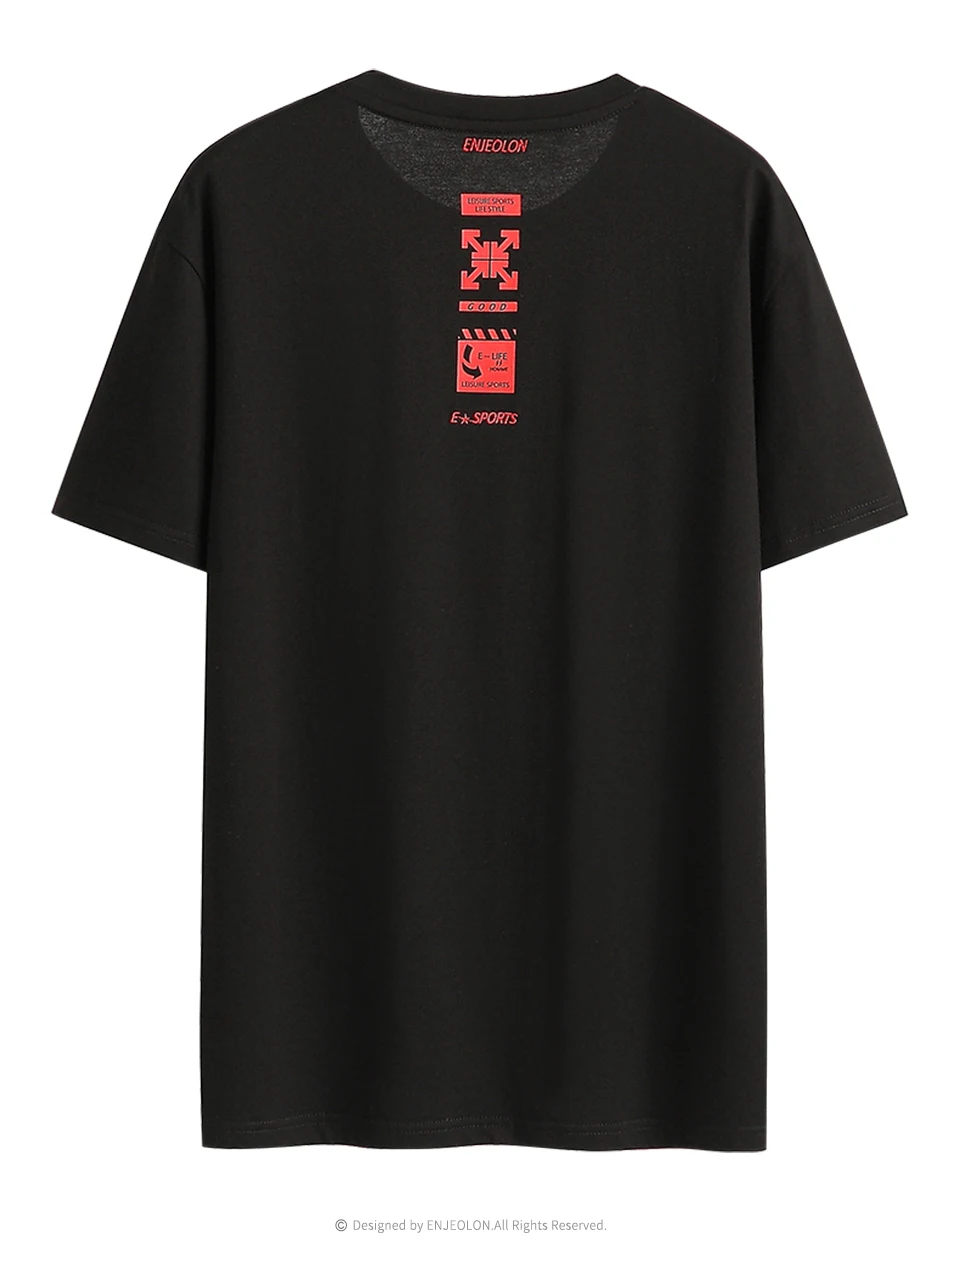 Enjeolon новая футболка мужская летняя модная футболка с круглым вырезом тонкая мужская футболка Повседневная модная футболка с принтом топы футболки 3XL T8148